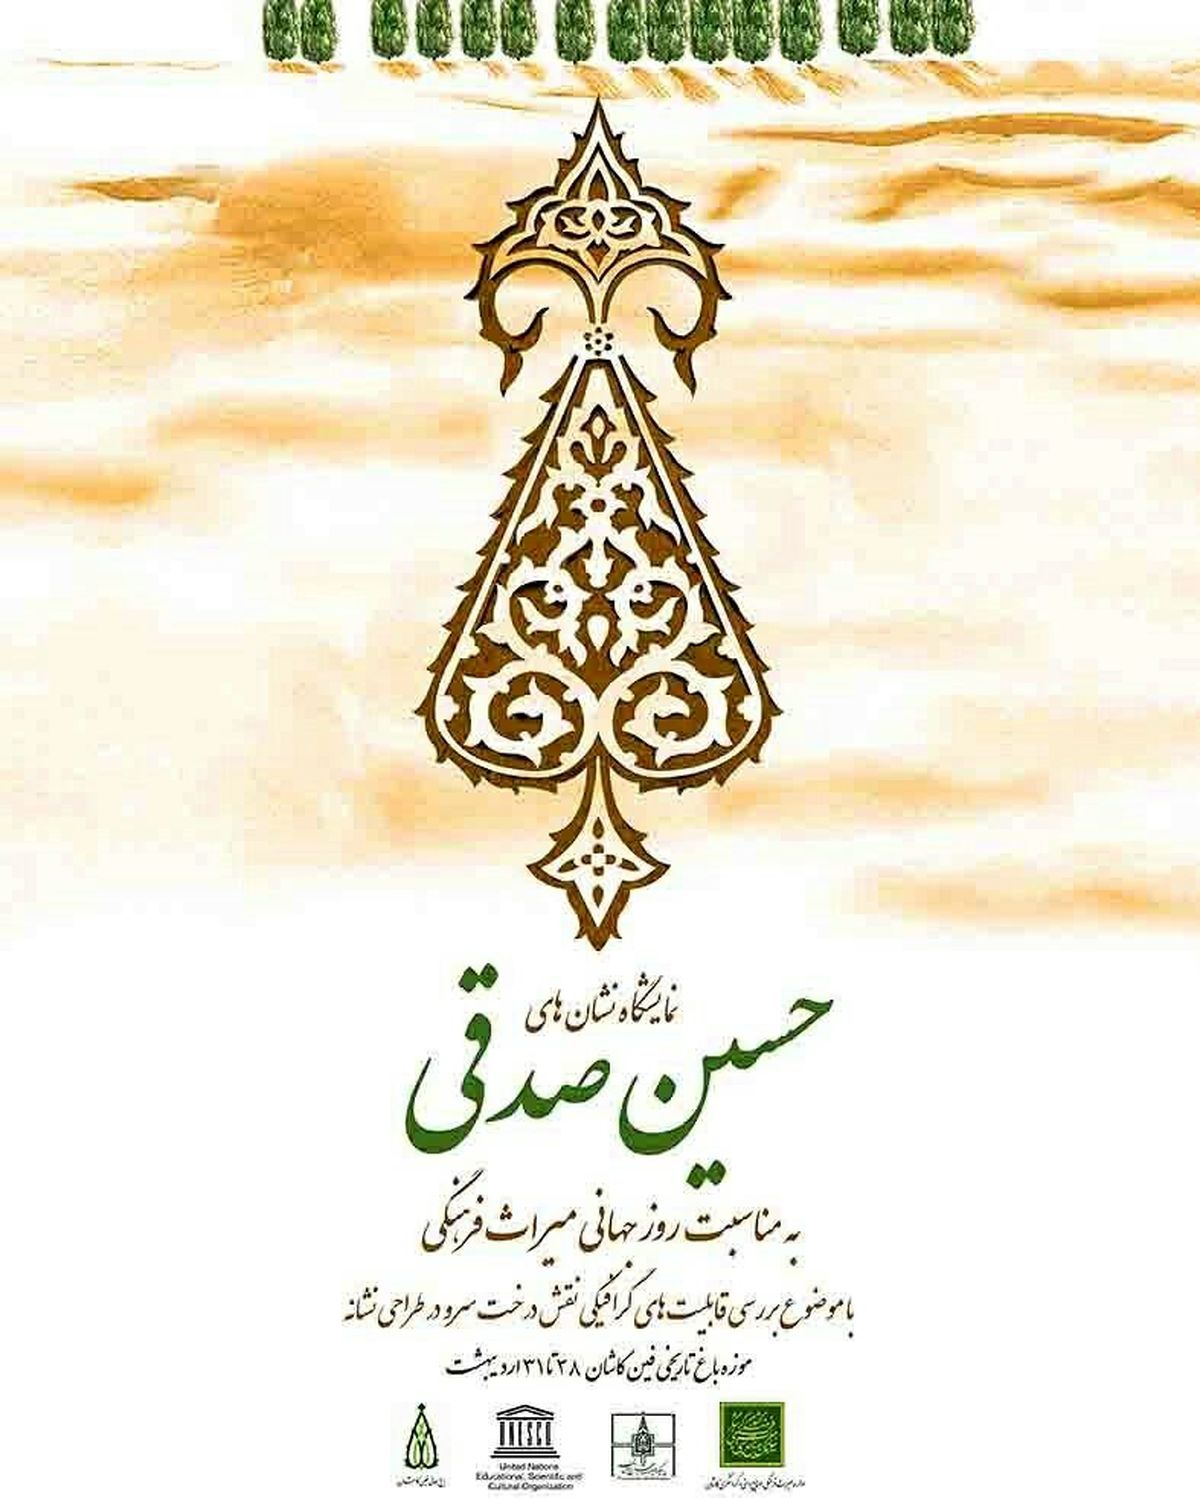 نمایشگاه آرم های طراحی شده نماد سرو در بناهاي تاريخي کاشان در موزه ملی کاشان